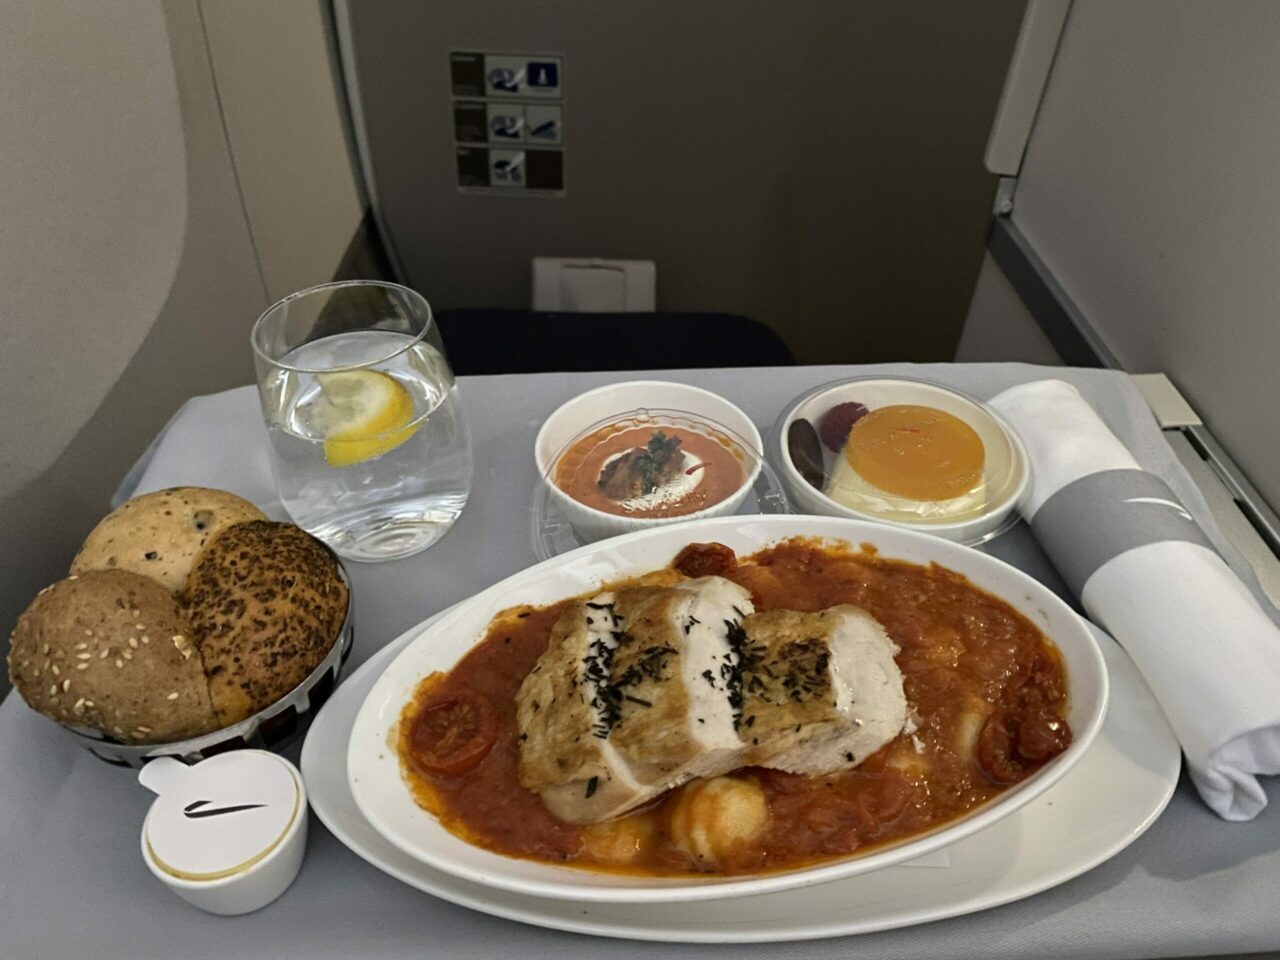 British Airways A350 Club Suite chicken dish 